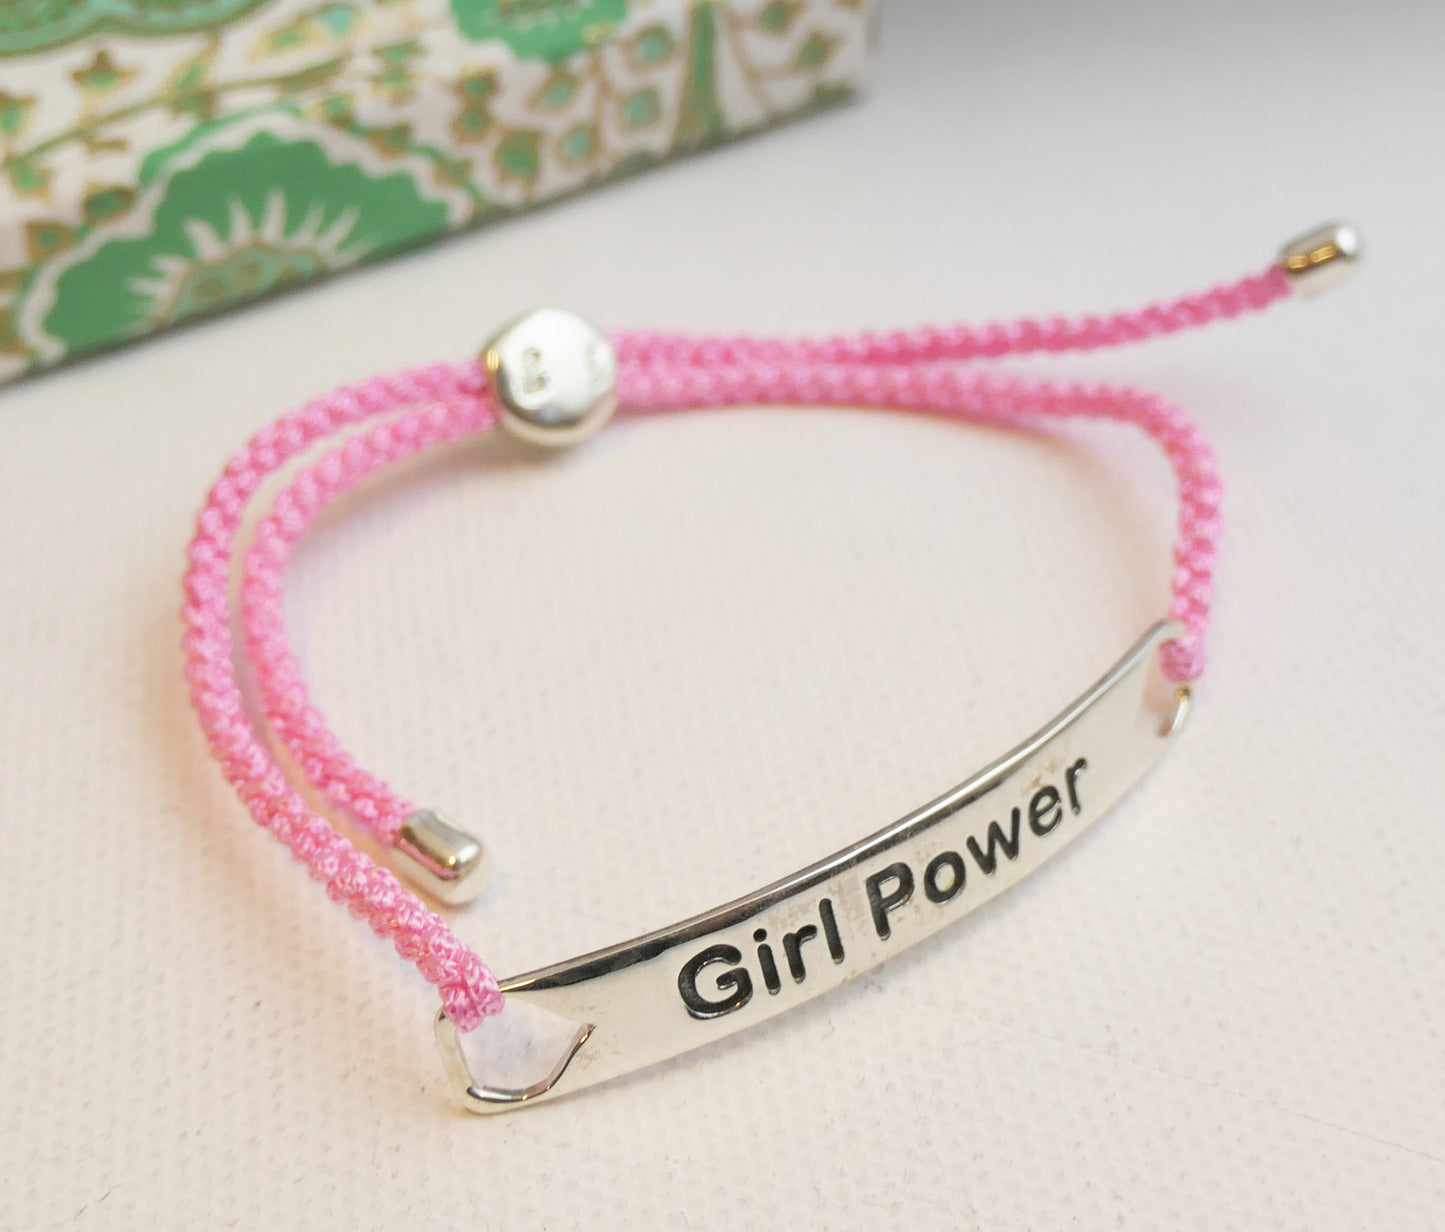 Girl Power Pink Cord Bracelet